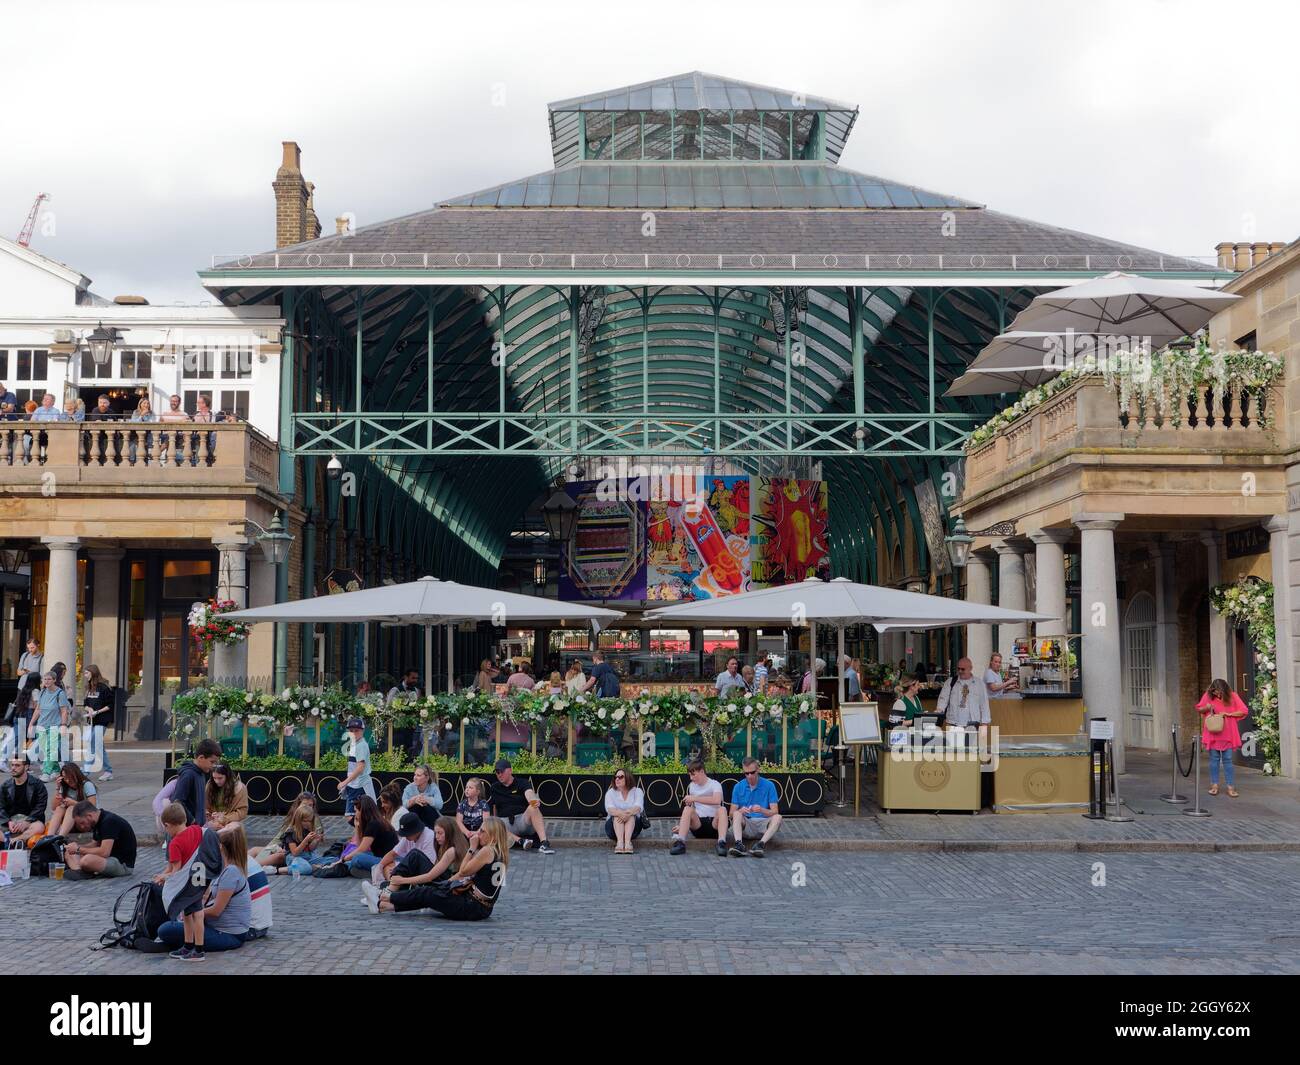 Londra, Grande Londra, Inghilterra, agosto 24 2021: La gente si siede sulla piazza principale a Covent Garden di fronte al suo mercato coperto. Foto Stock